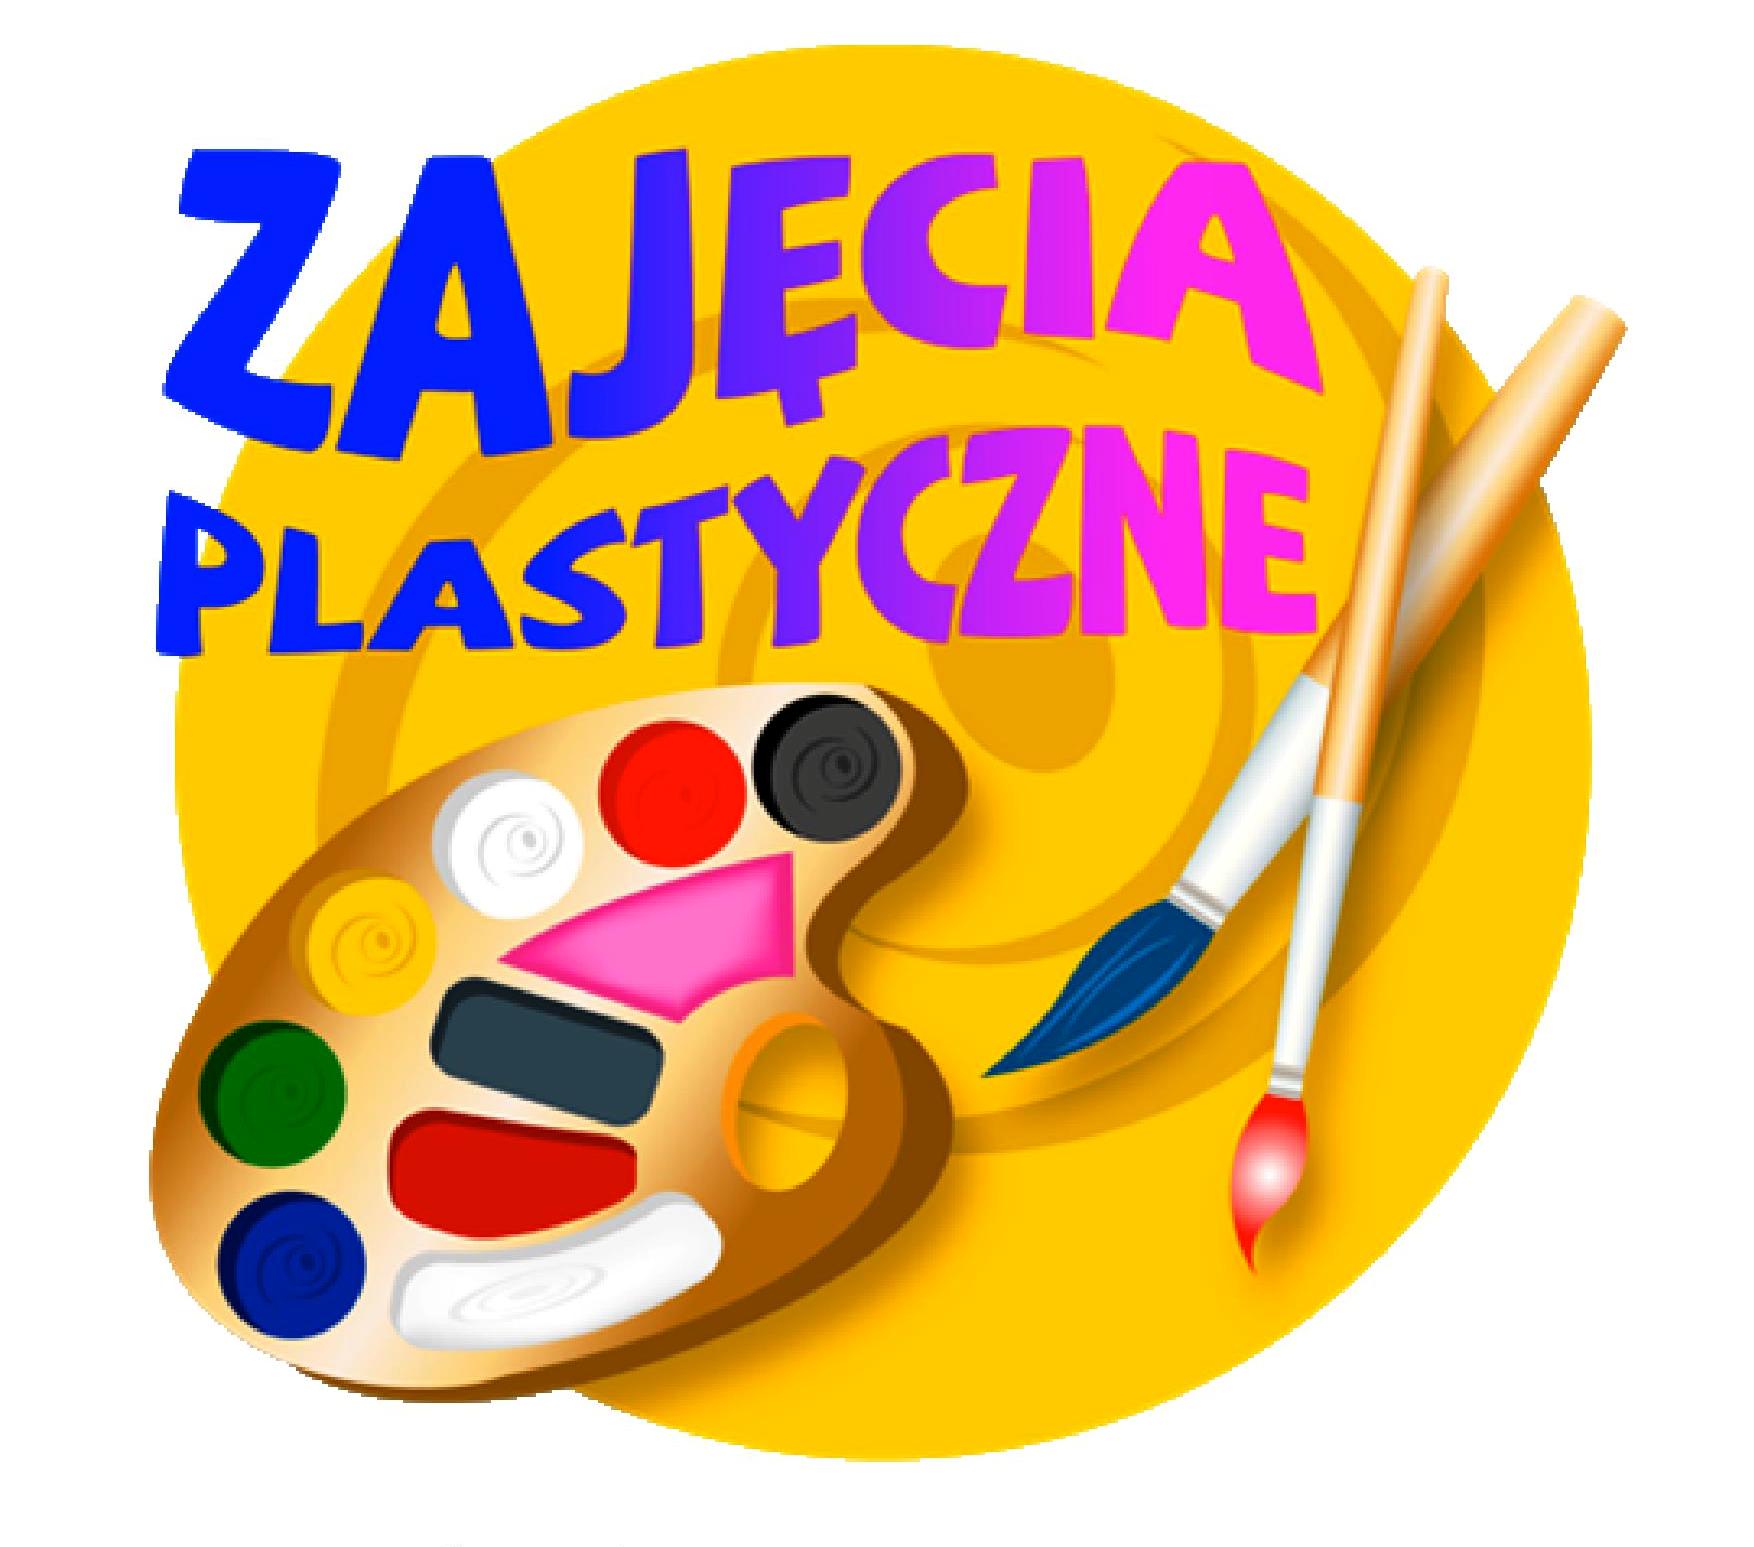 zajęcia plastyczne logo